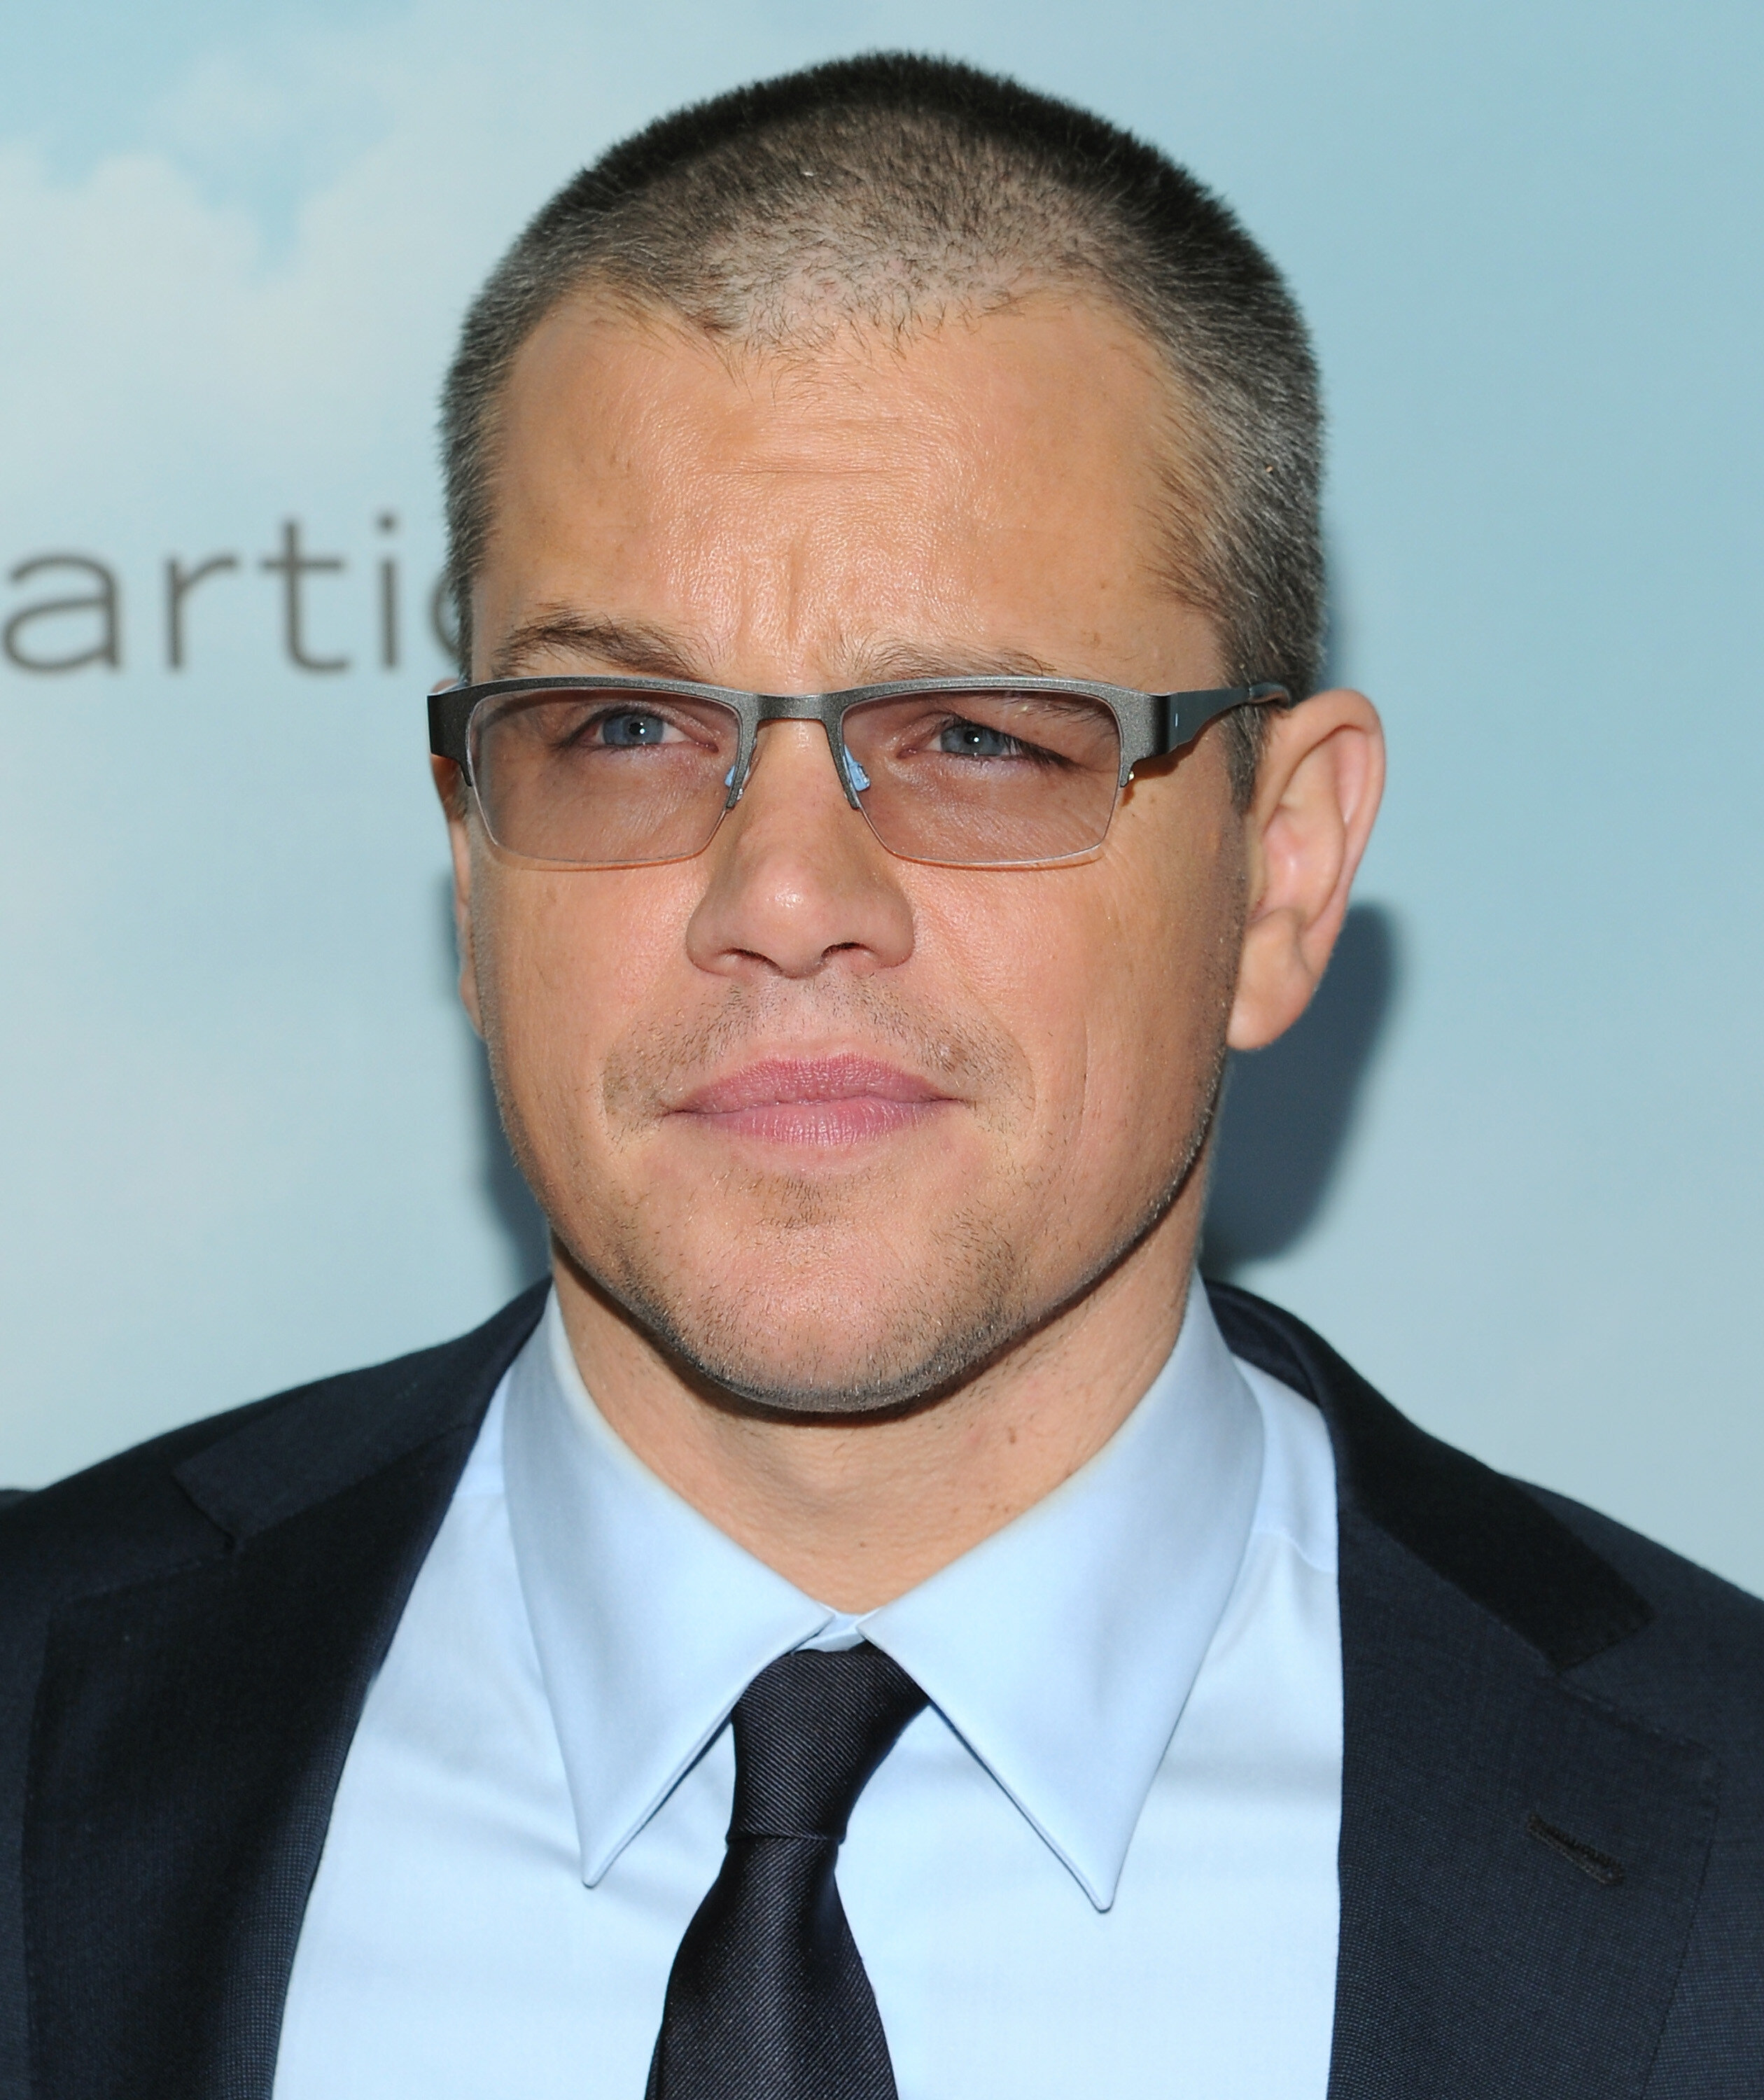 Matt Damon Julia Stiles attend Jason Bourne premiere  UPIcom